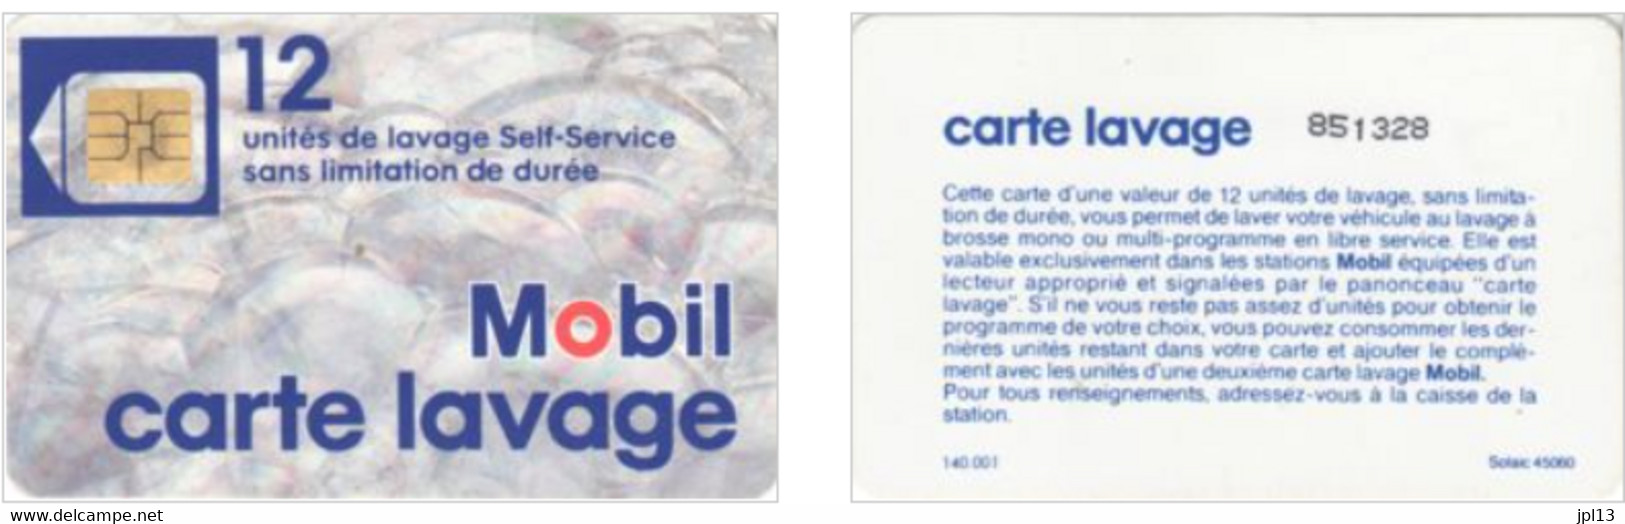 Carte Lavage - France - Mobil - 12 Unités De Lavage - Photo 2 - Car Wash